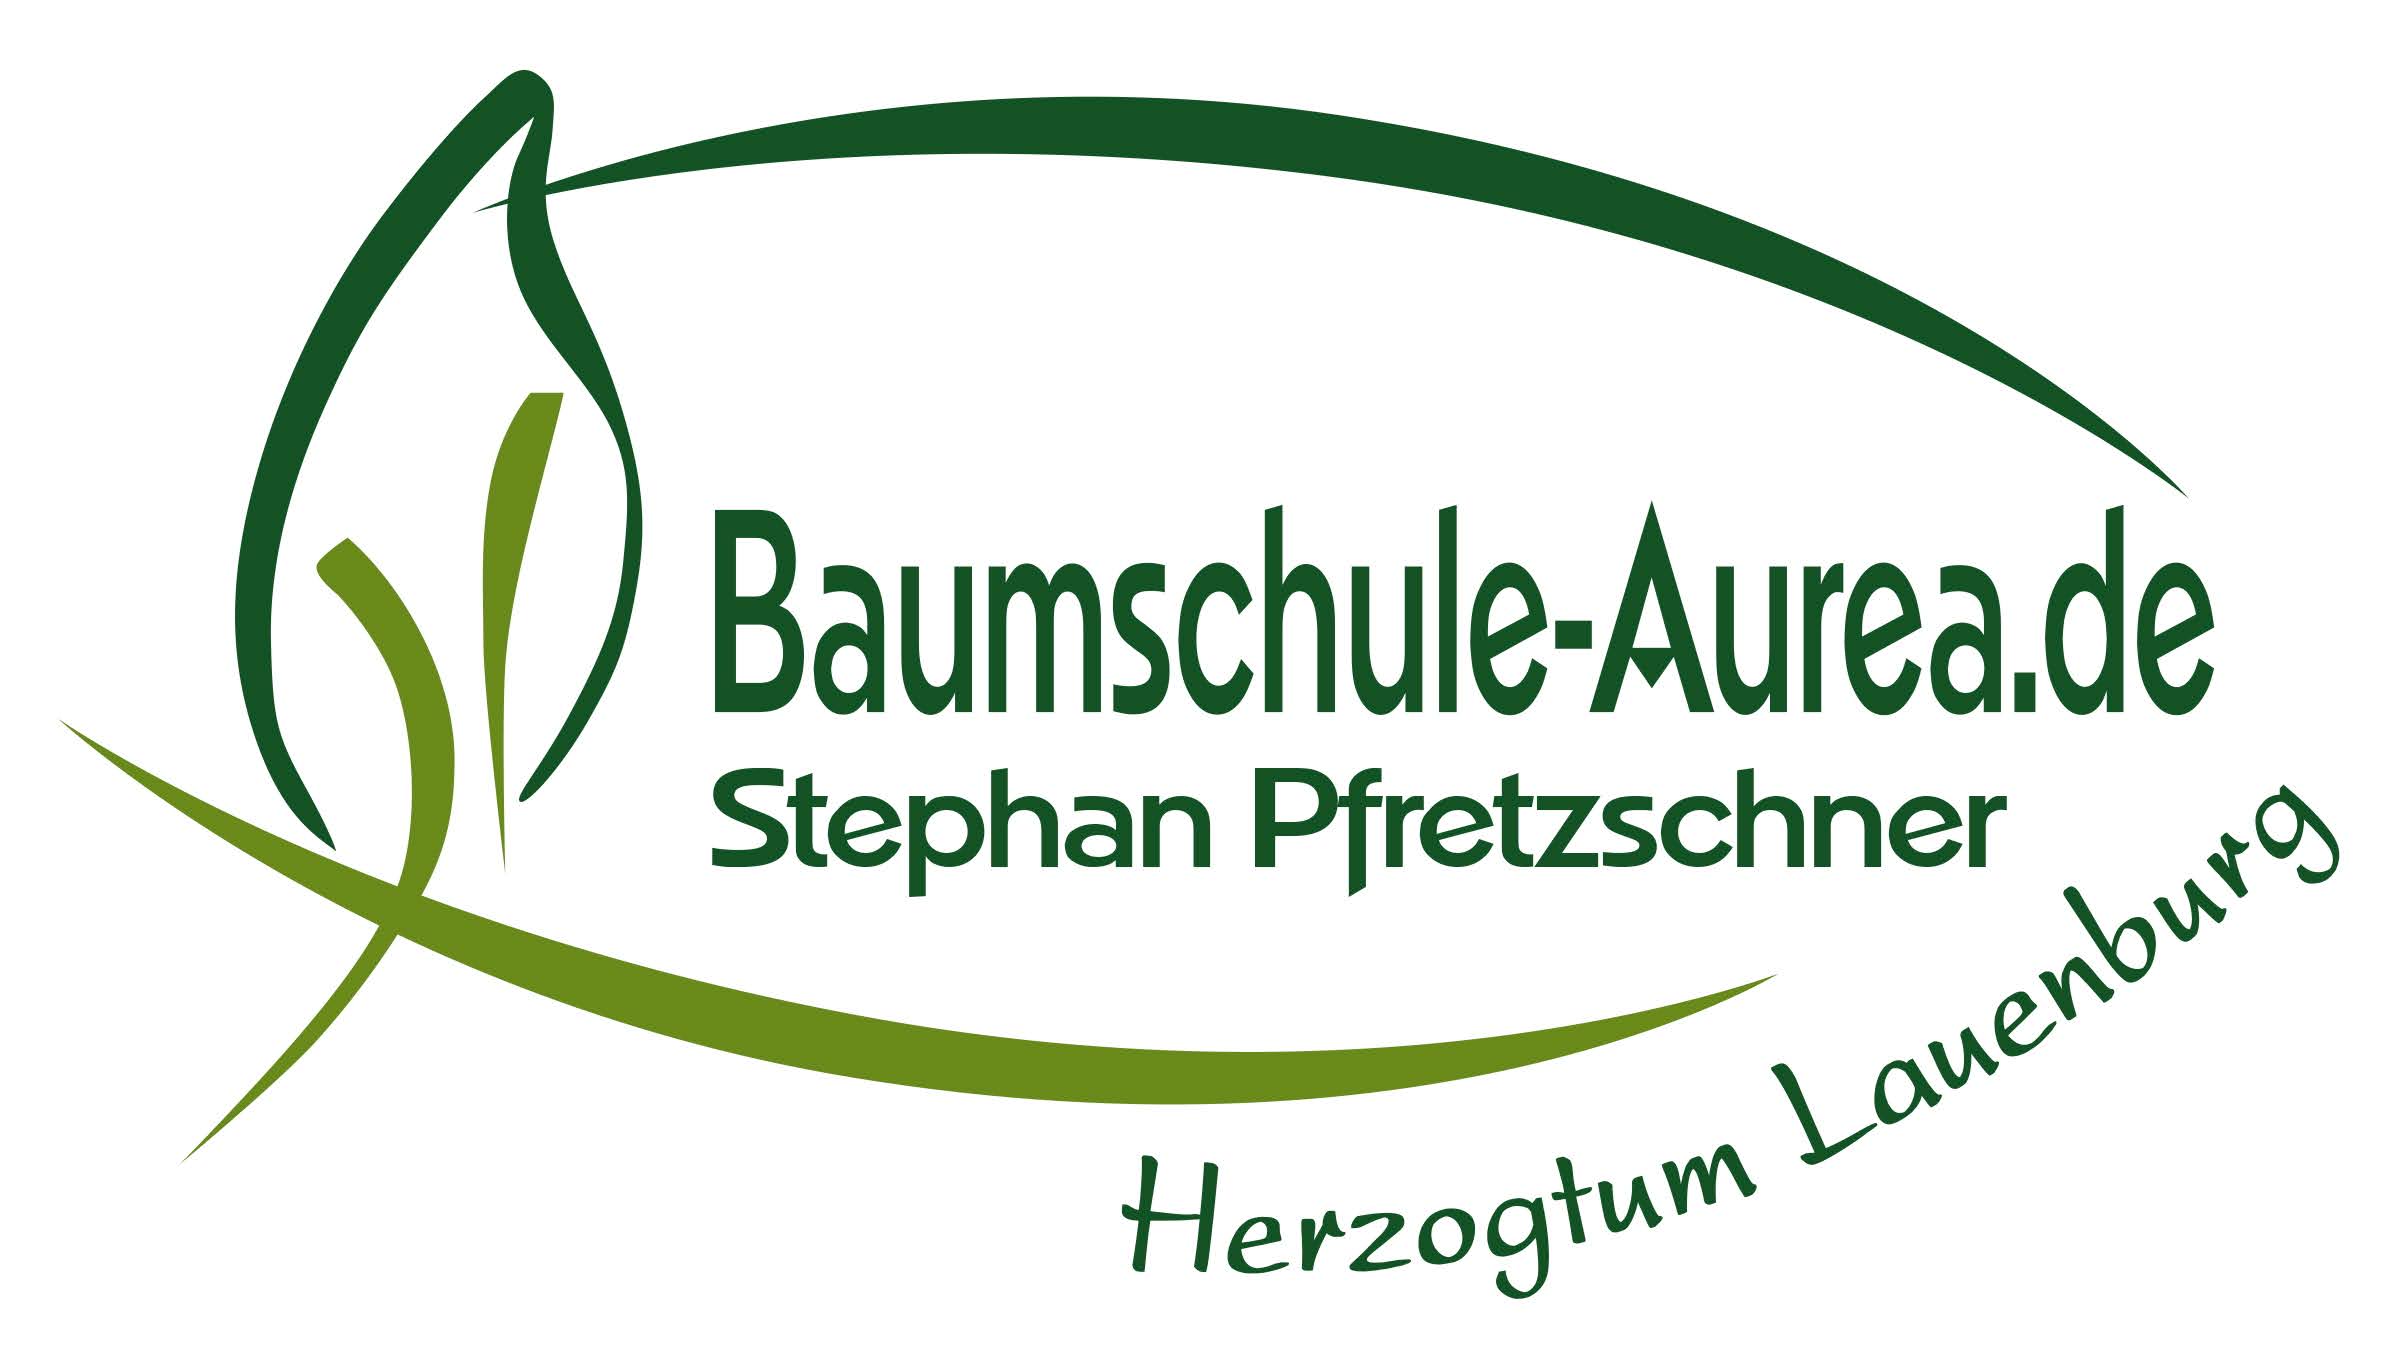 (c) Baumschule-aurea.de